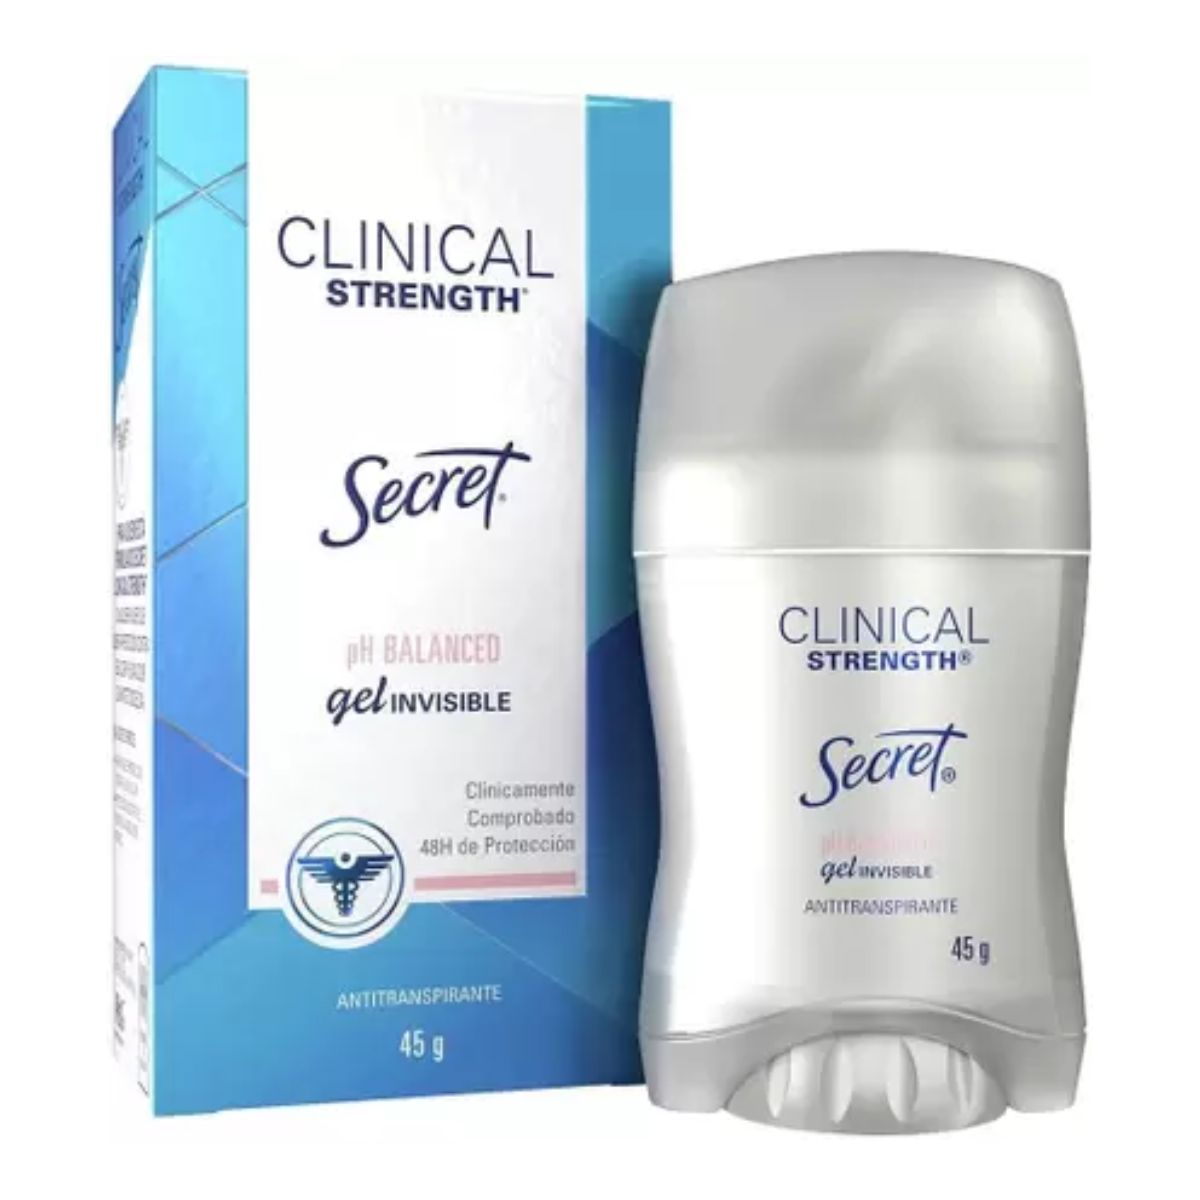 Desodorante Clinical Strenght Secret Ph Balanceado Gel invisível 45 g